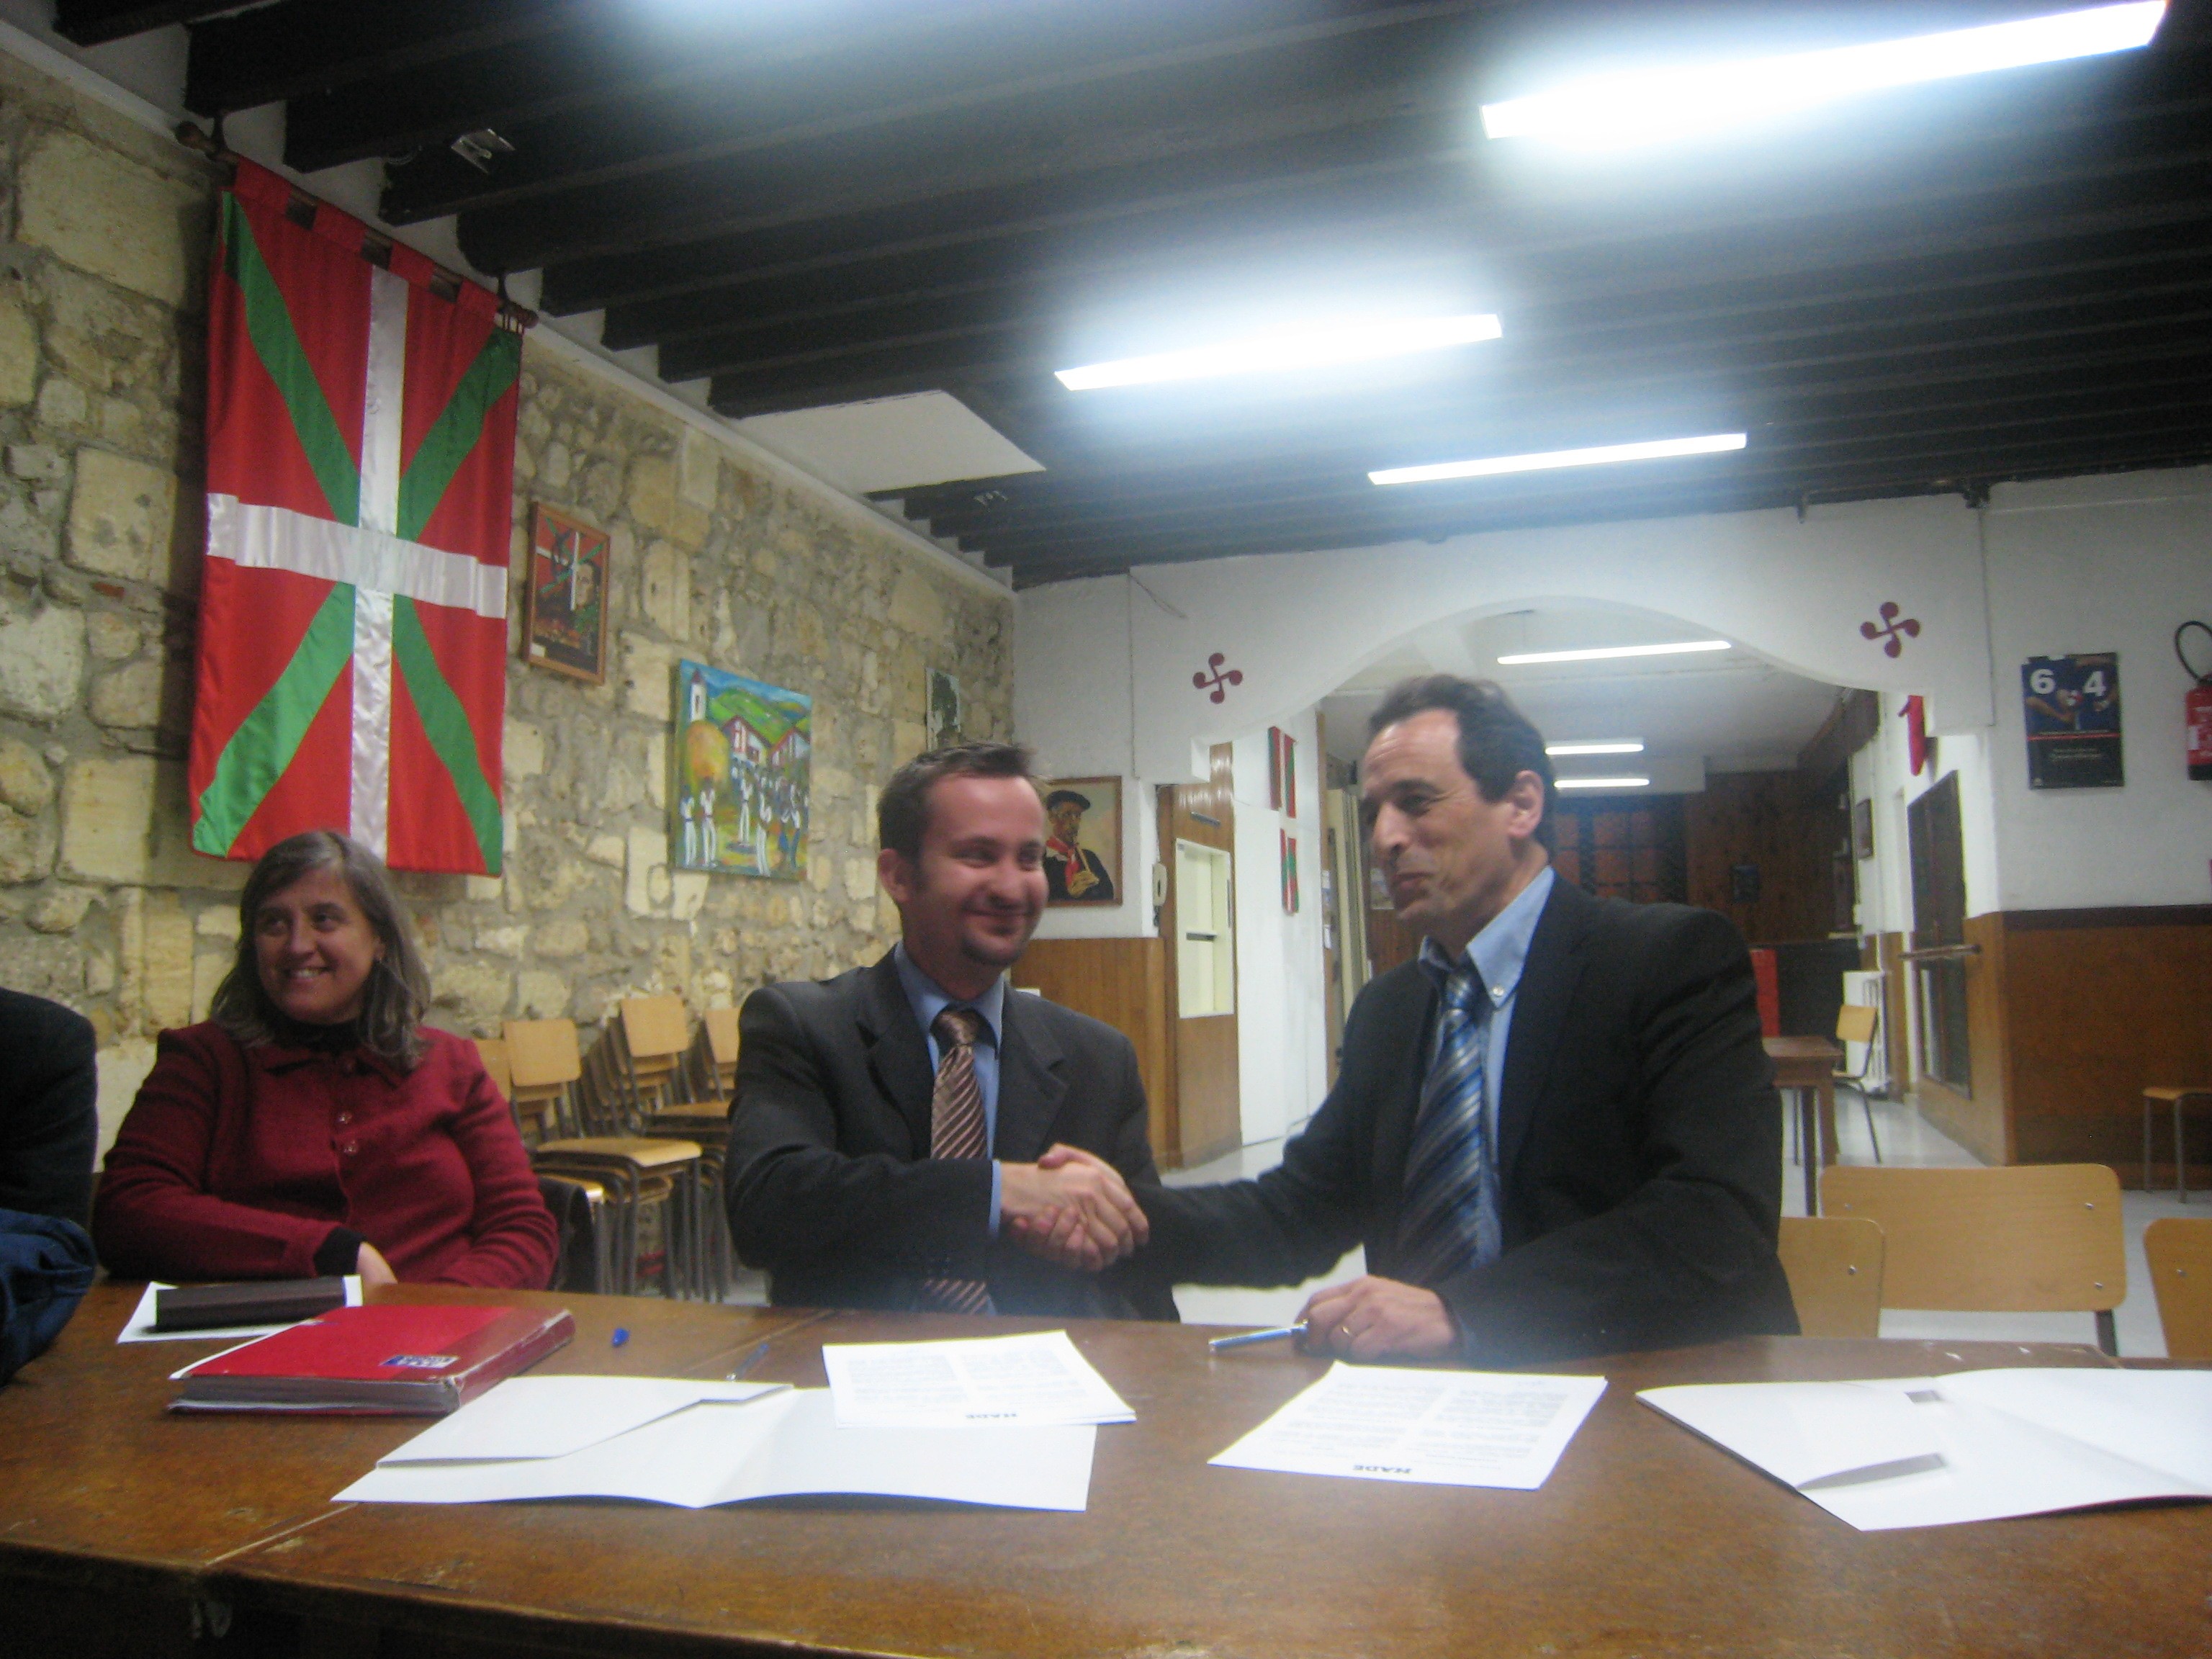 El presidente de la euskal etxea bordelesa firma un acuerdo de colaboración para impartir clases de euskera con HABE, el año pasado